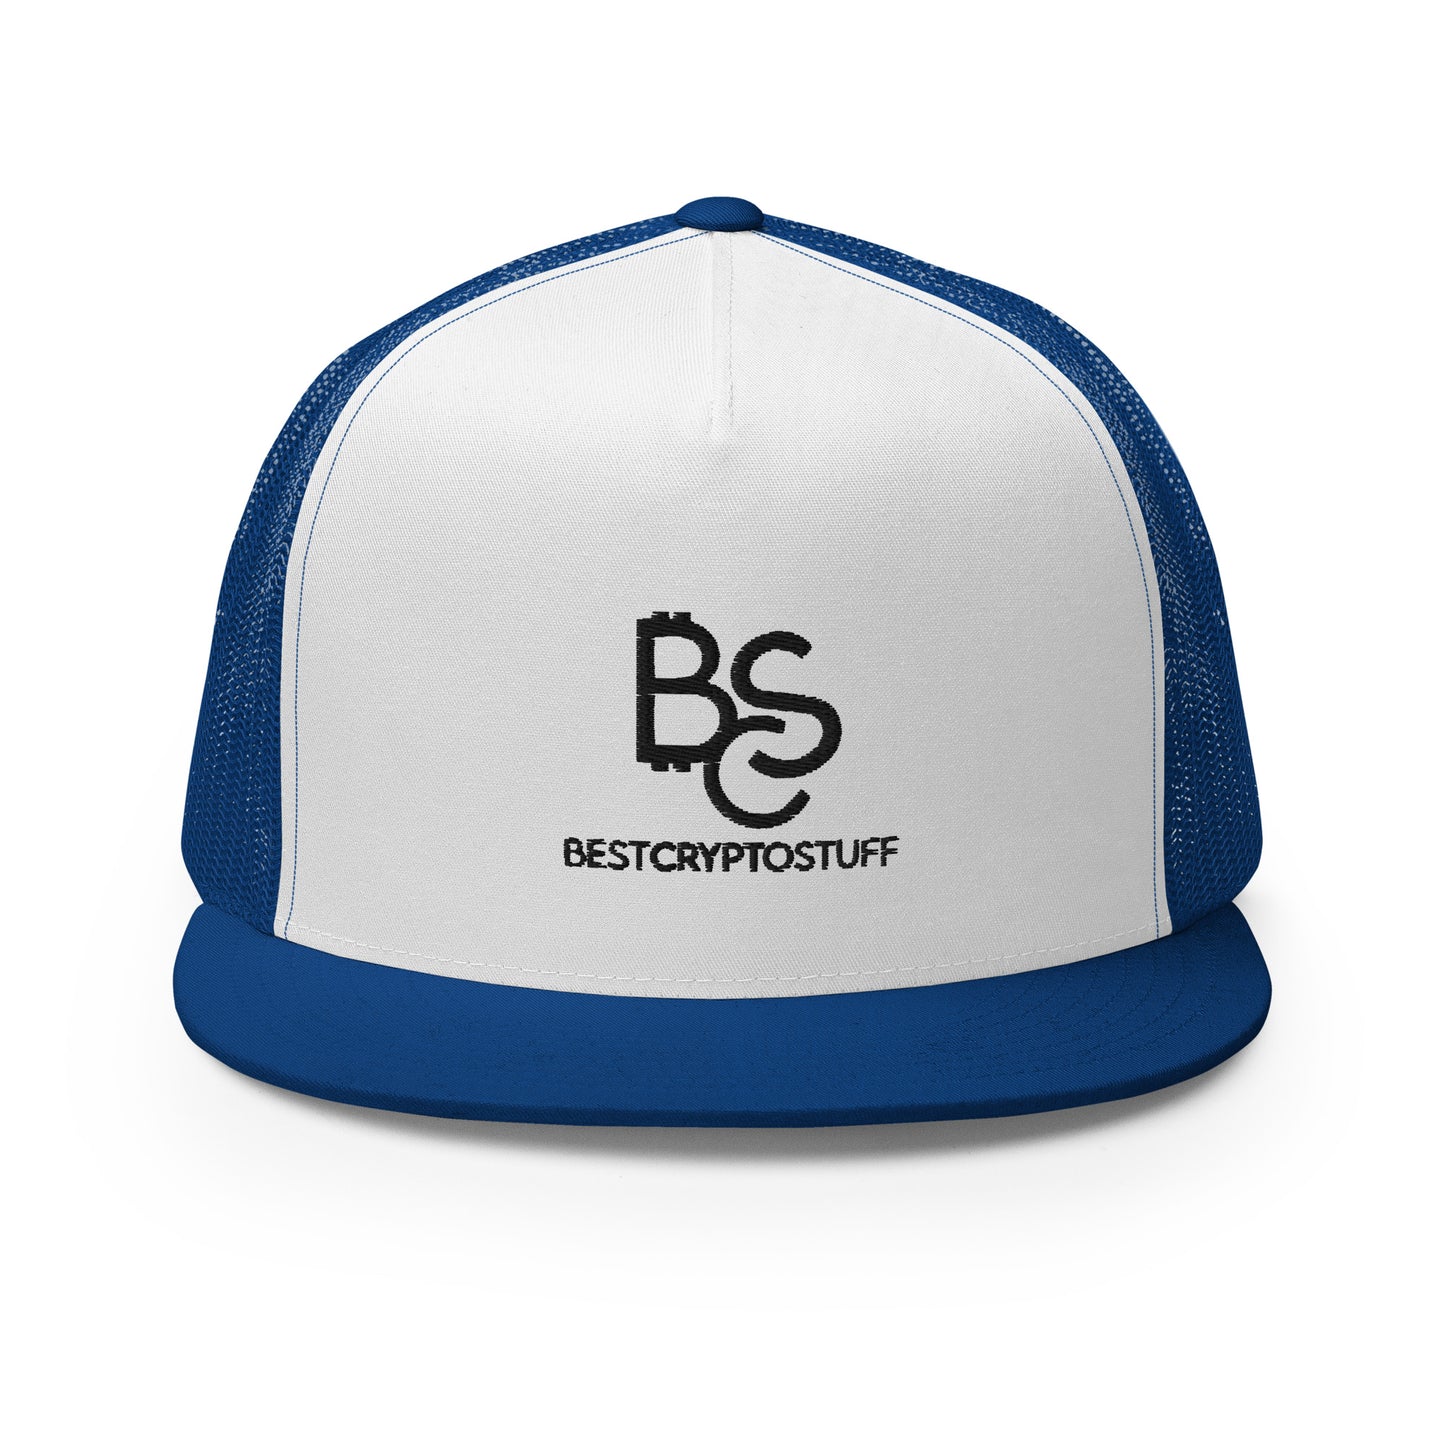 BCS BESTCRYPTOSTUFF Snapback Cap